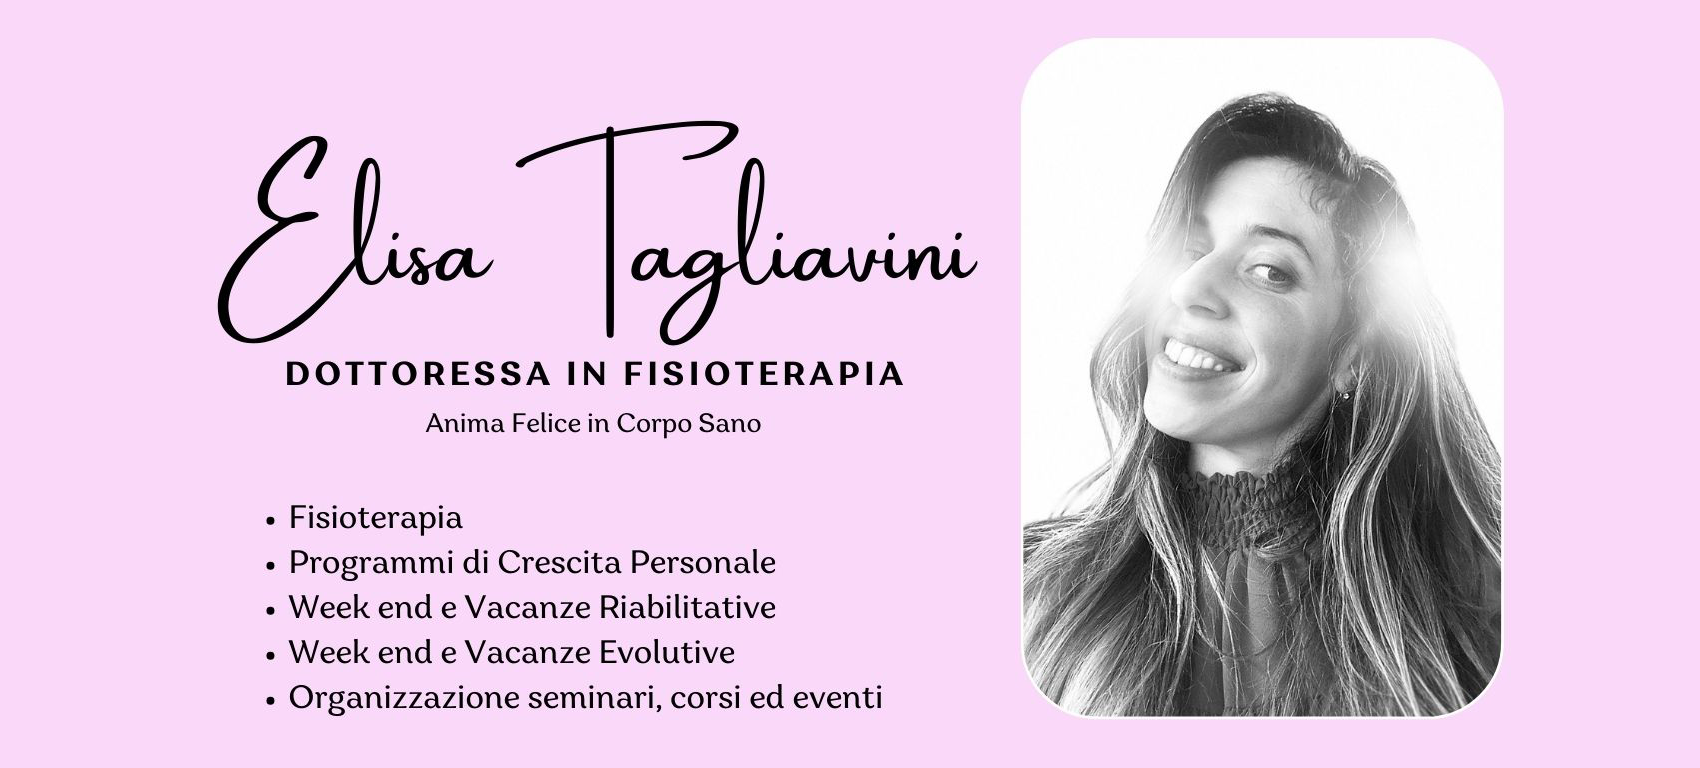 Elisa Tagliavini - dottoressa in Fisioterapia | Anima felice in Corpo sano